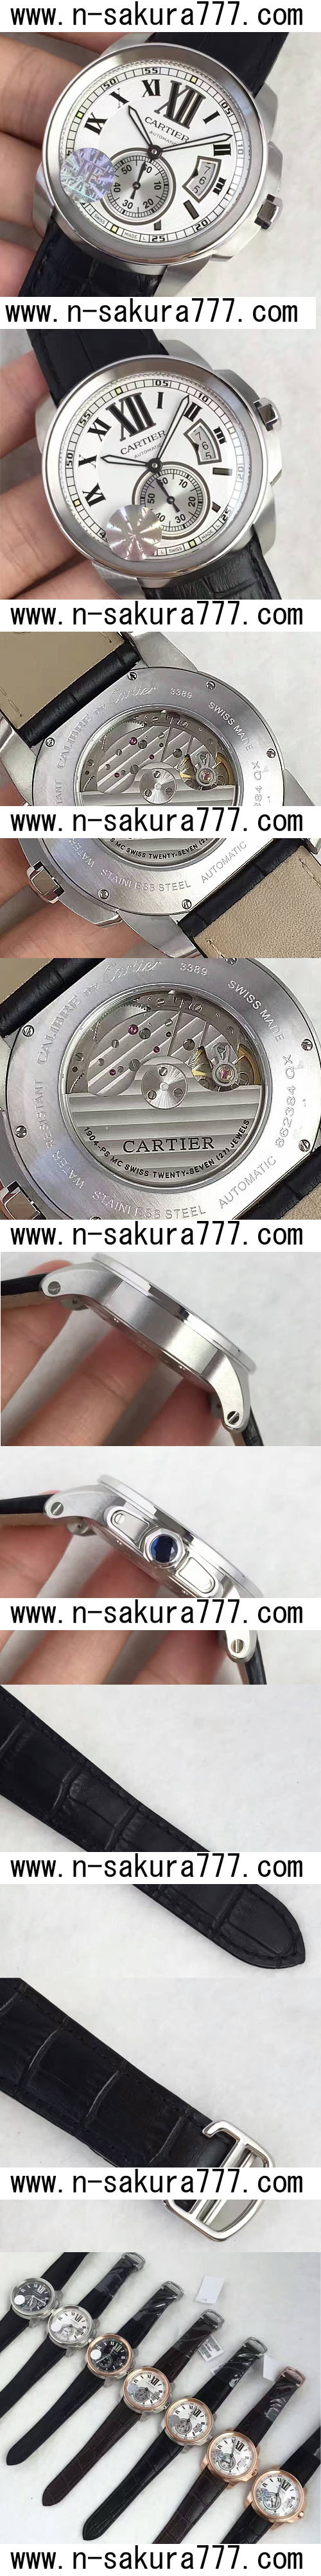 スーパーコピー時計カリブルcartier. 1904-psmc ムーブメント(JF工場) - ウインドウを閉じる